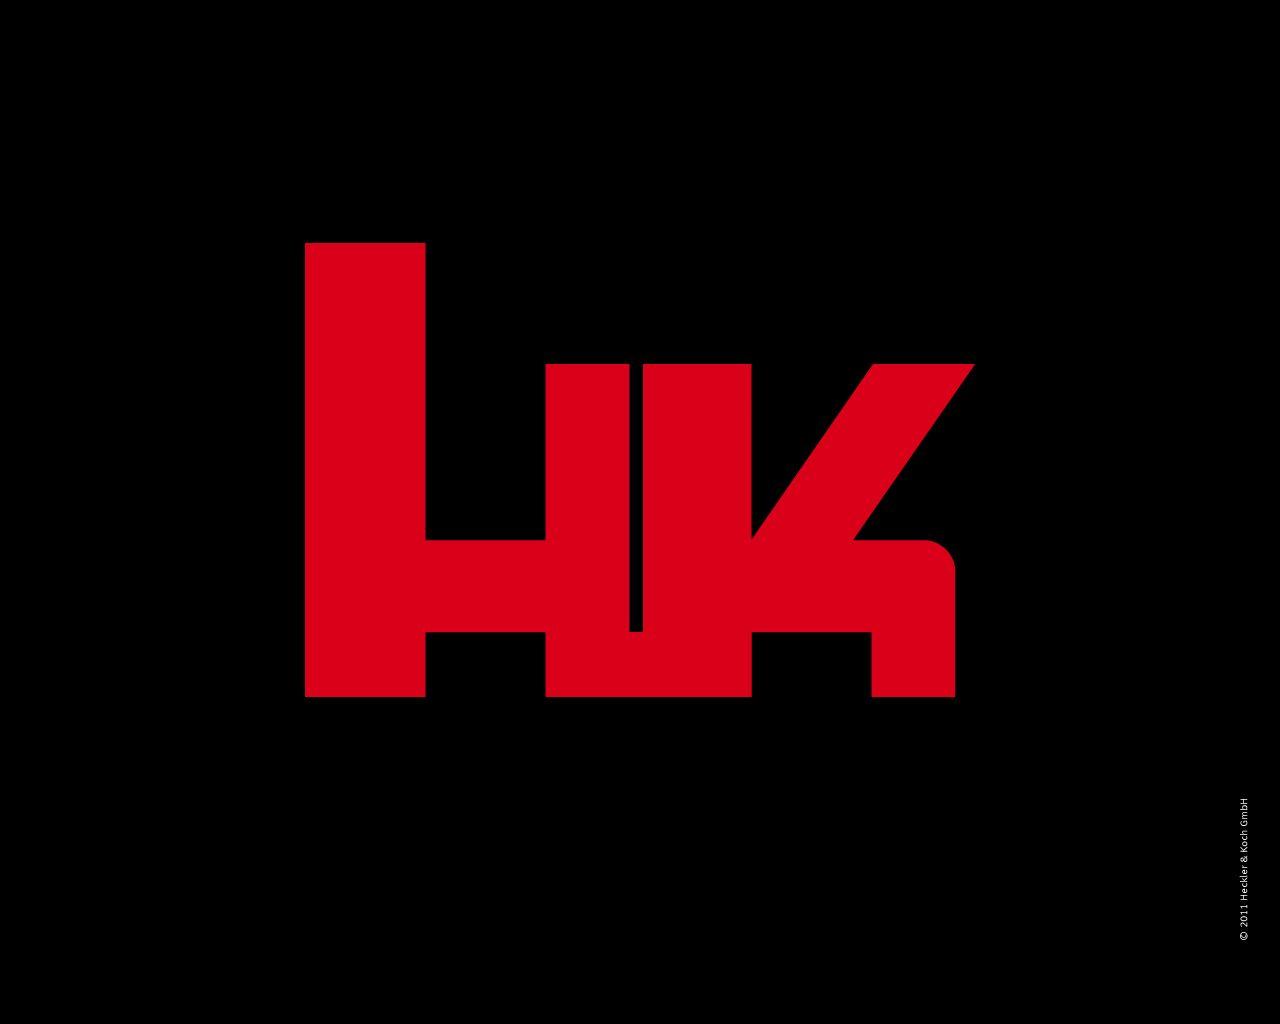 HK Logo - Heckler & Koch - Downloads